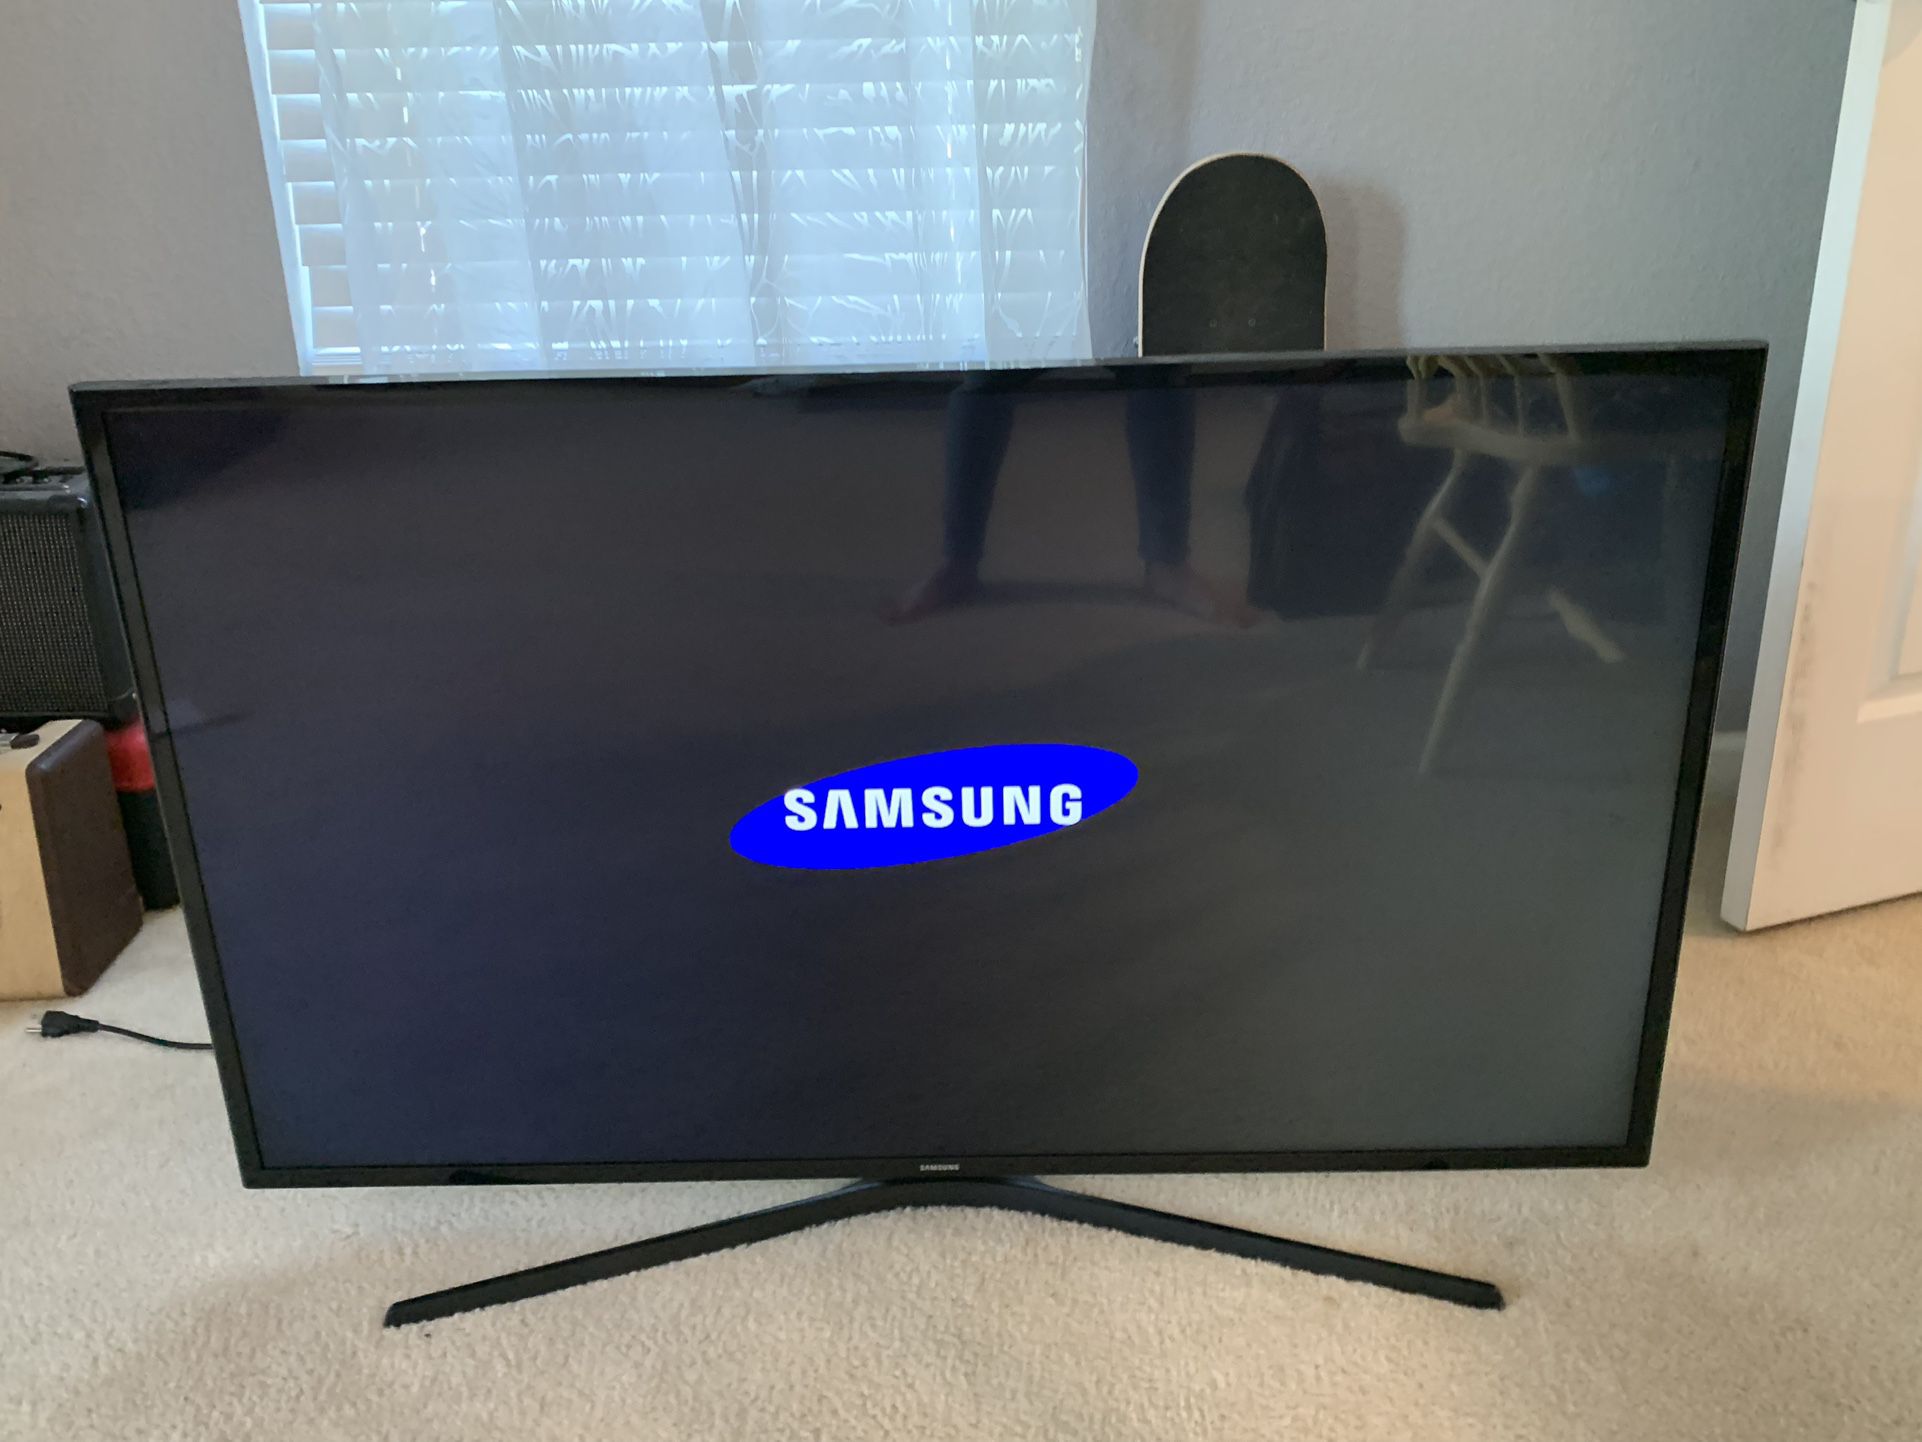 48” Samsung TV with original remote 